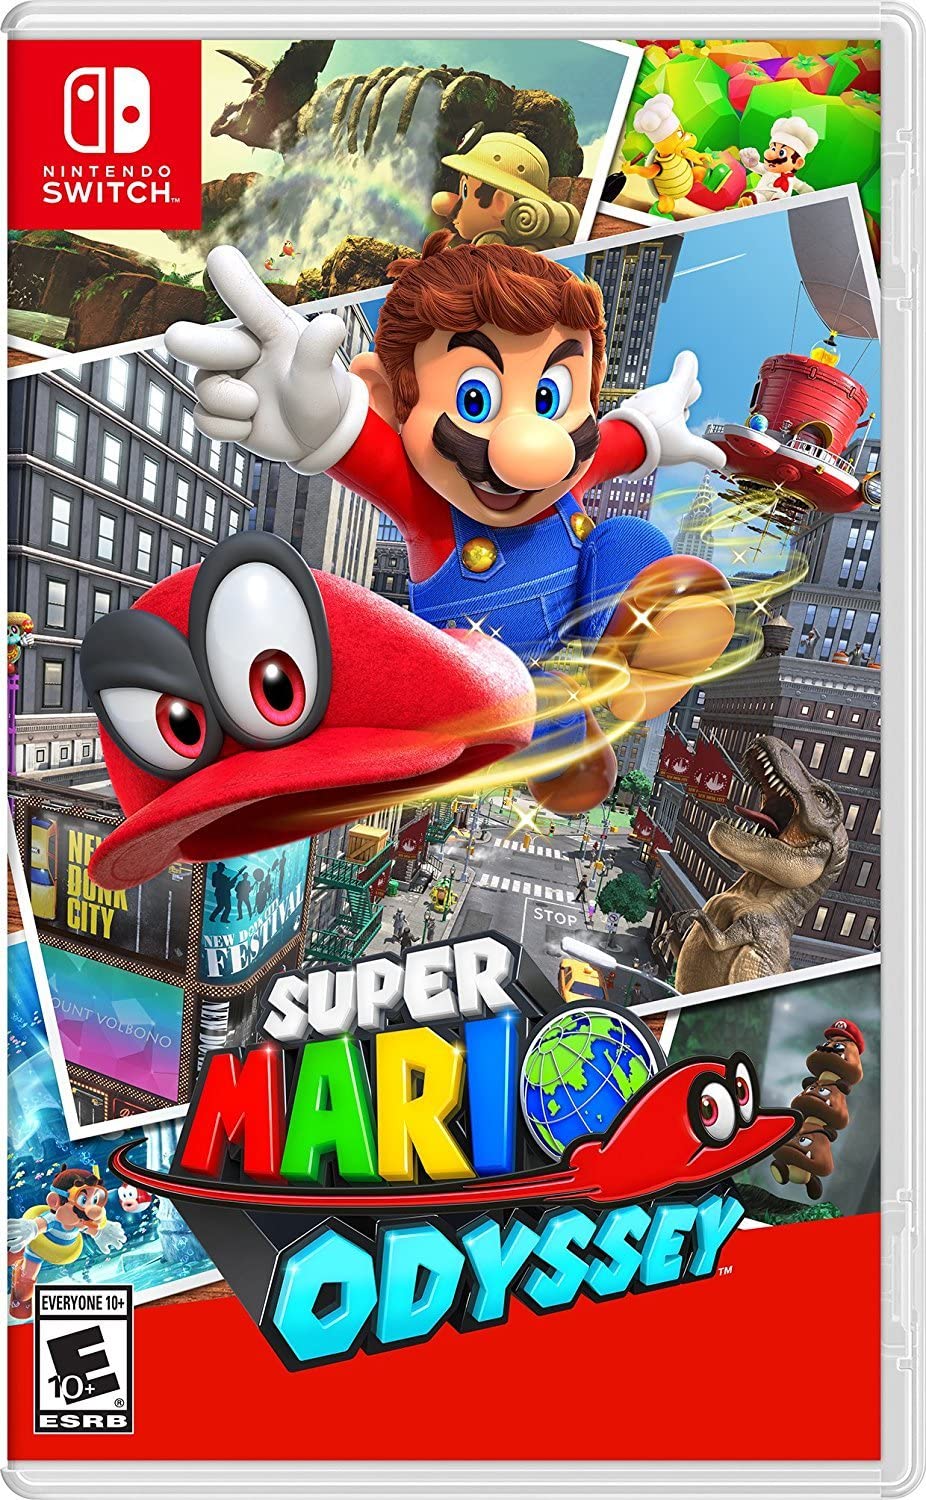 Franquia Mario vendeu mais de 500 milhões de jogos no mundo